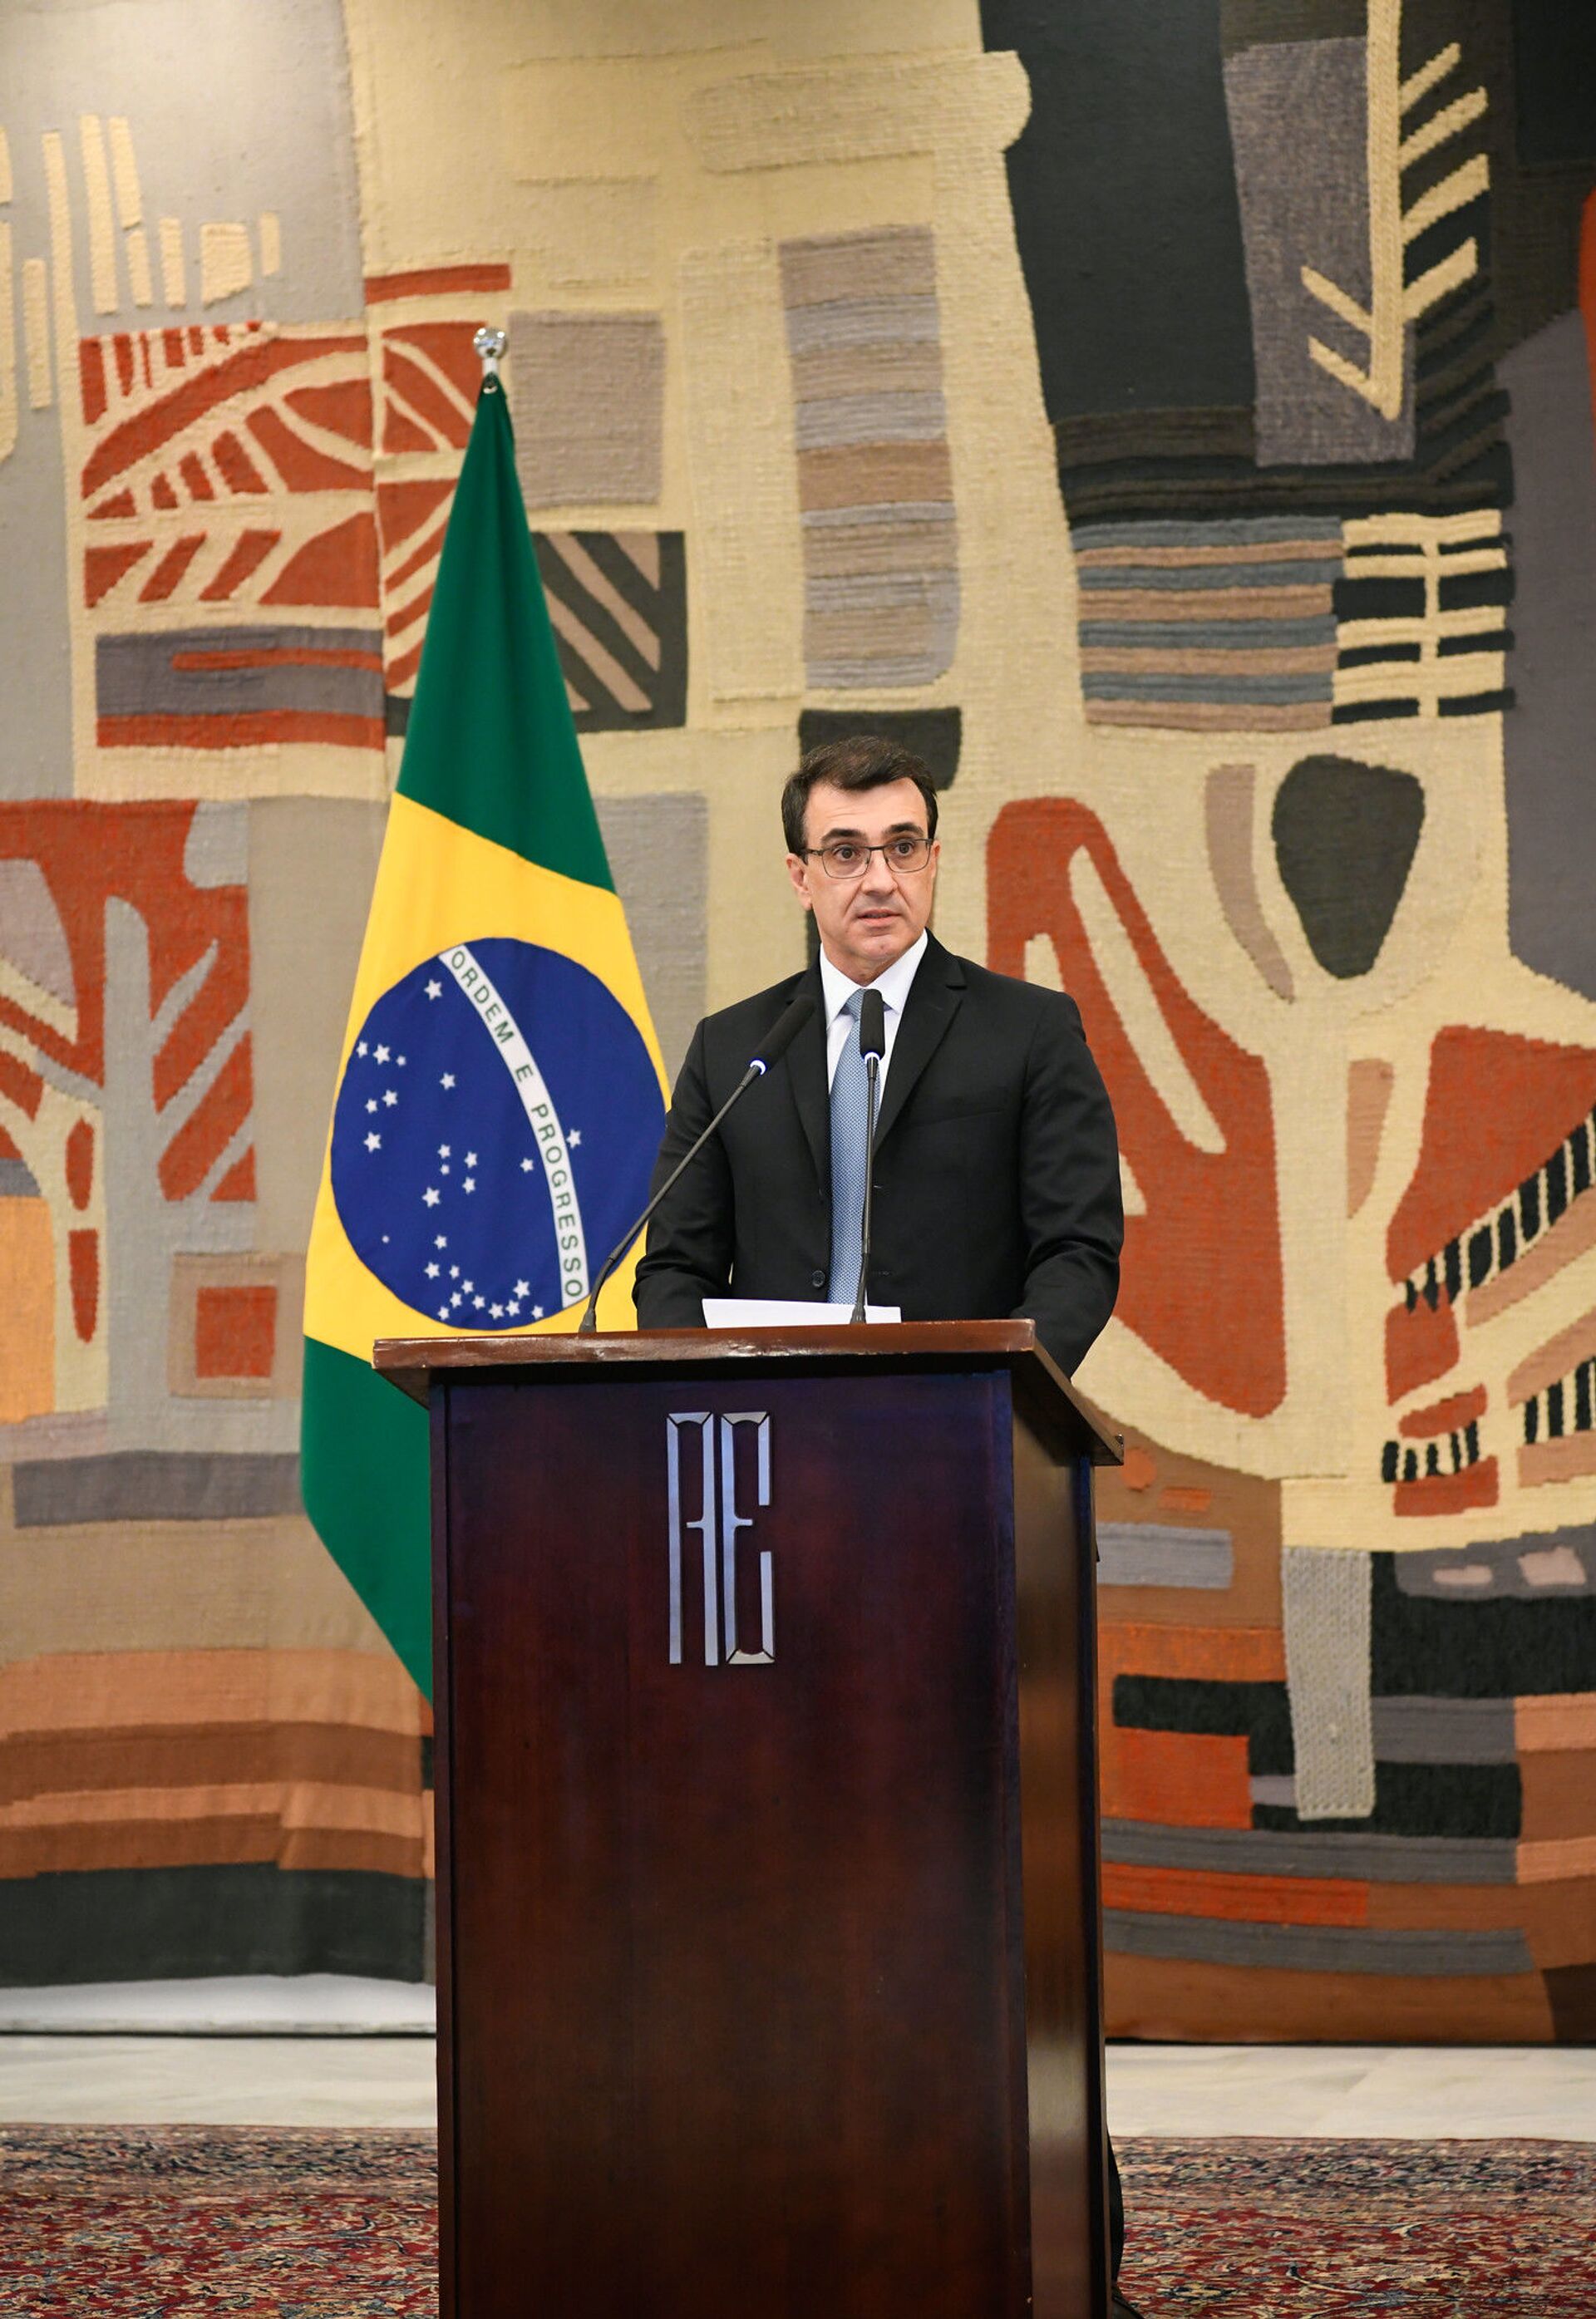 'Extremismo com punhos de renda': novo chanceler dosará influência bolsonarista na política externa? - Sputnik Brasil, 1920, 07.04.2021